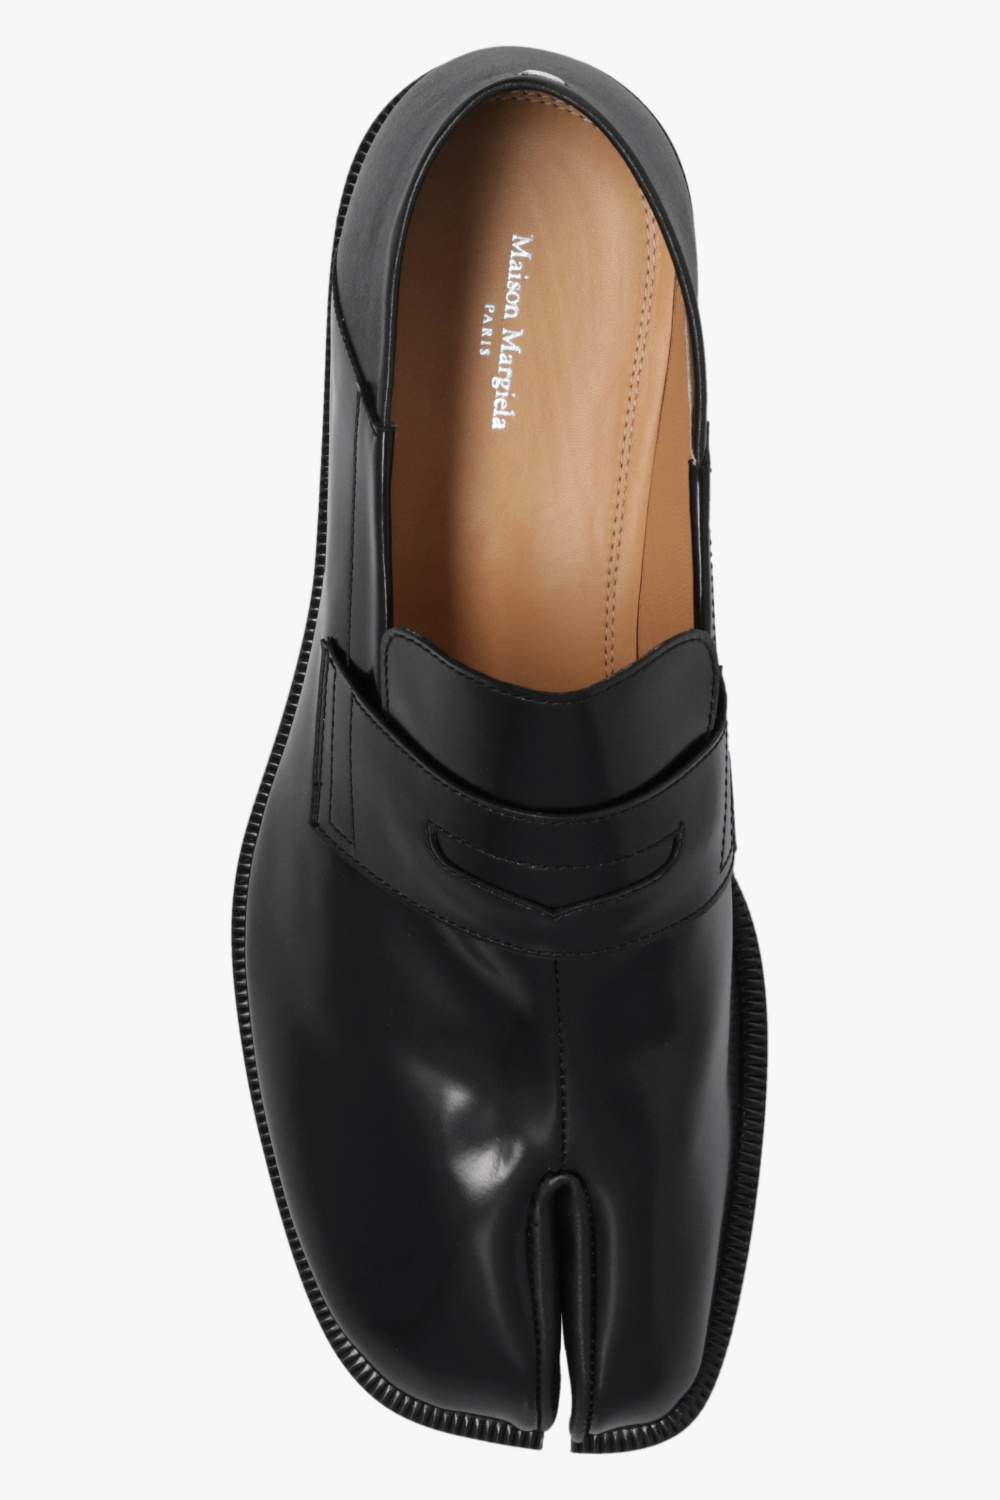 Black 'Tabi' split-toe shoes Maison Margiela - Vitkac GB